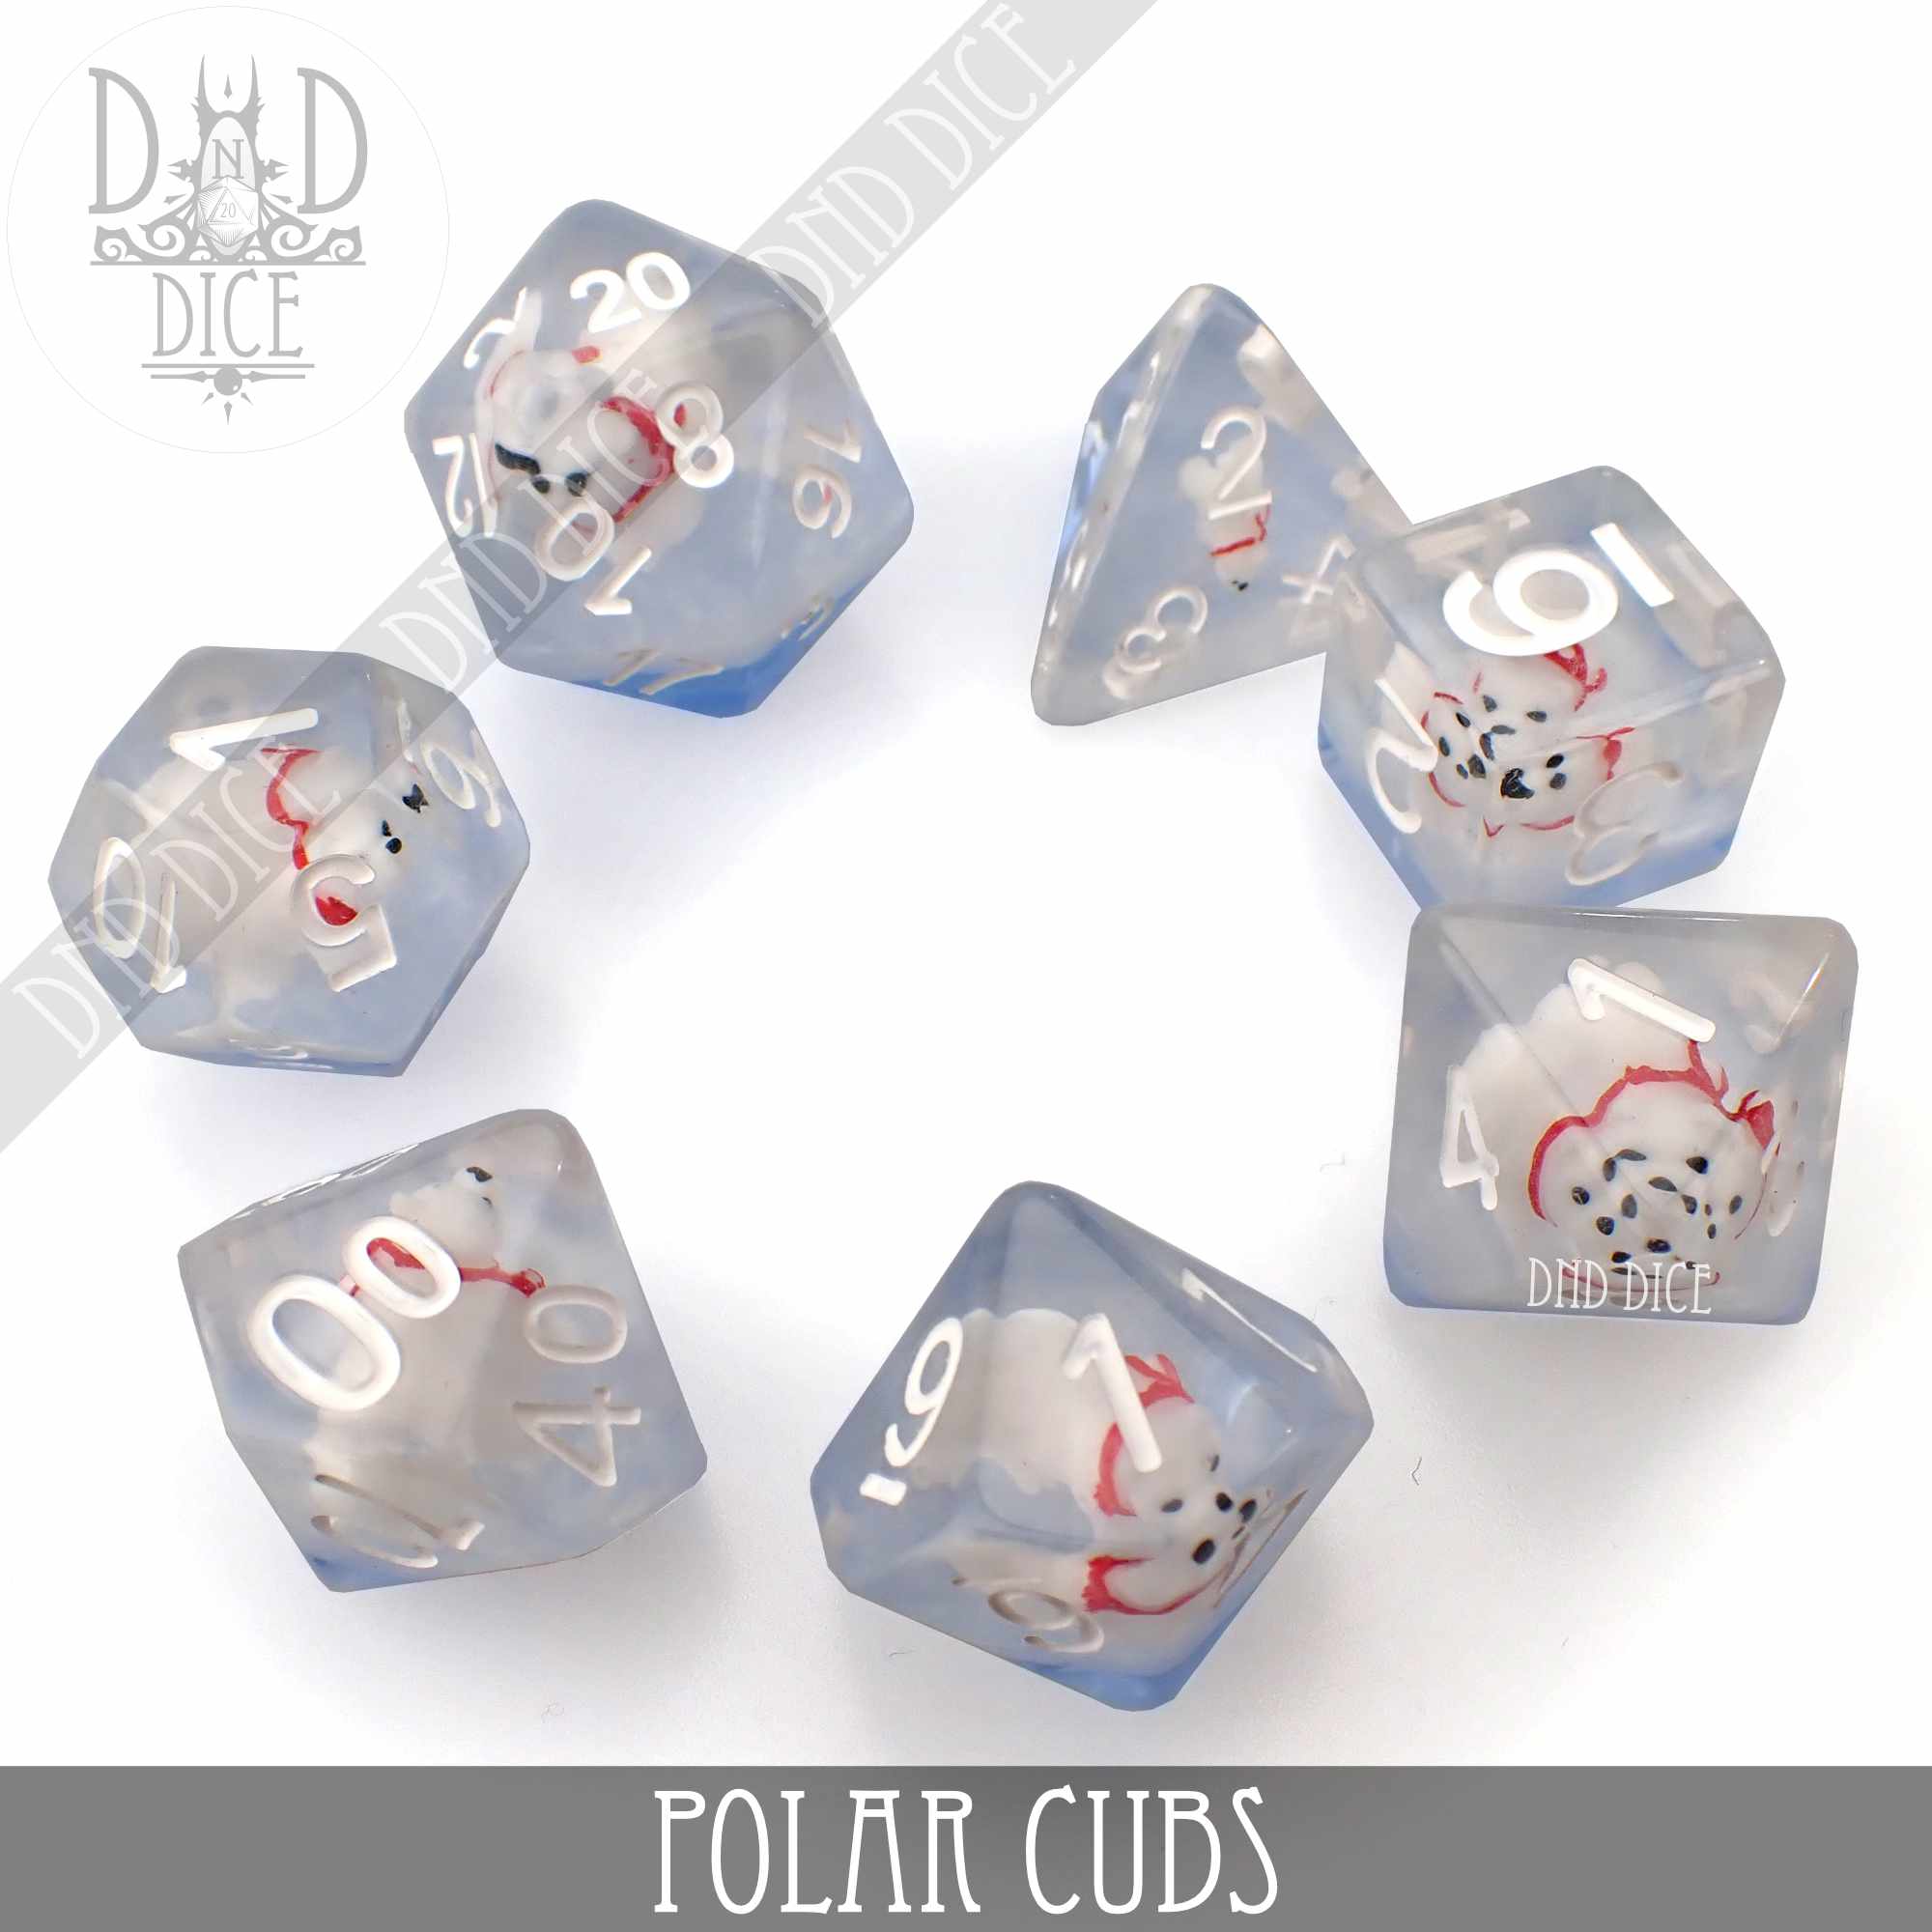 Polar Cubs Dice Set